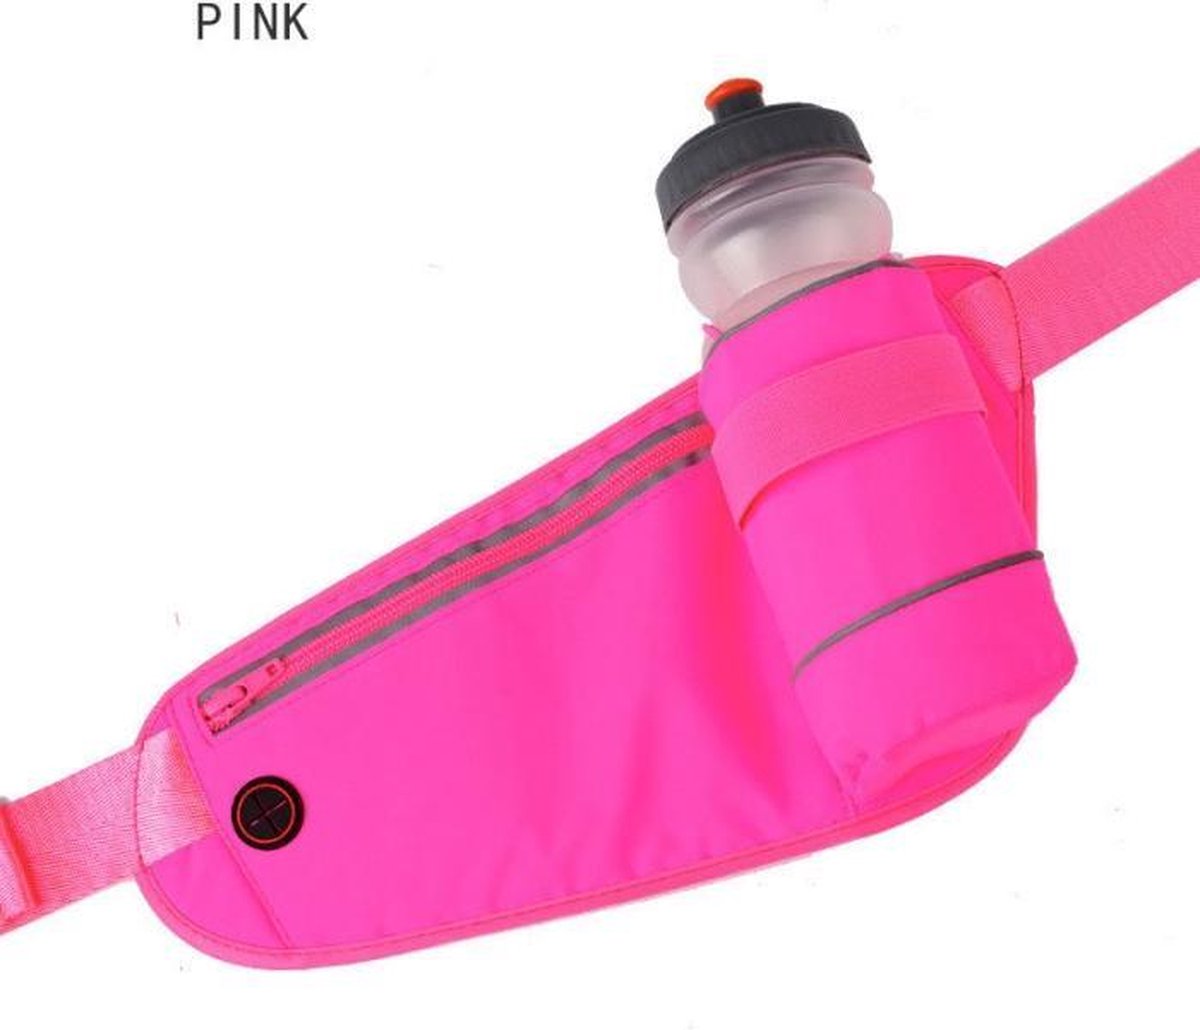 Heupband Running belts, waterdichte heuptas met drinkwatergordel, verstelbare sportriemtas voor hardlopen en wandelen - roze